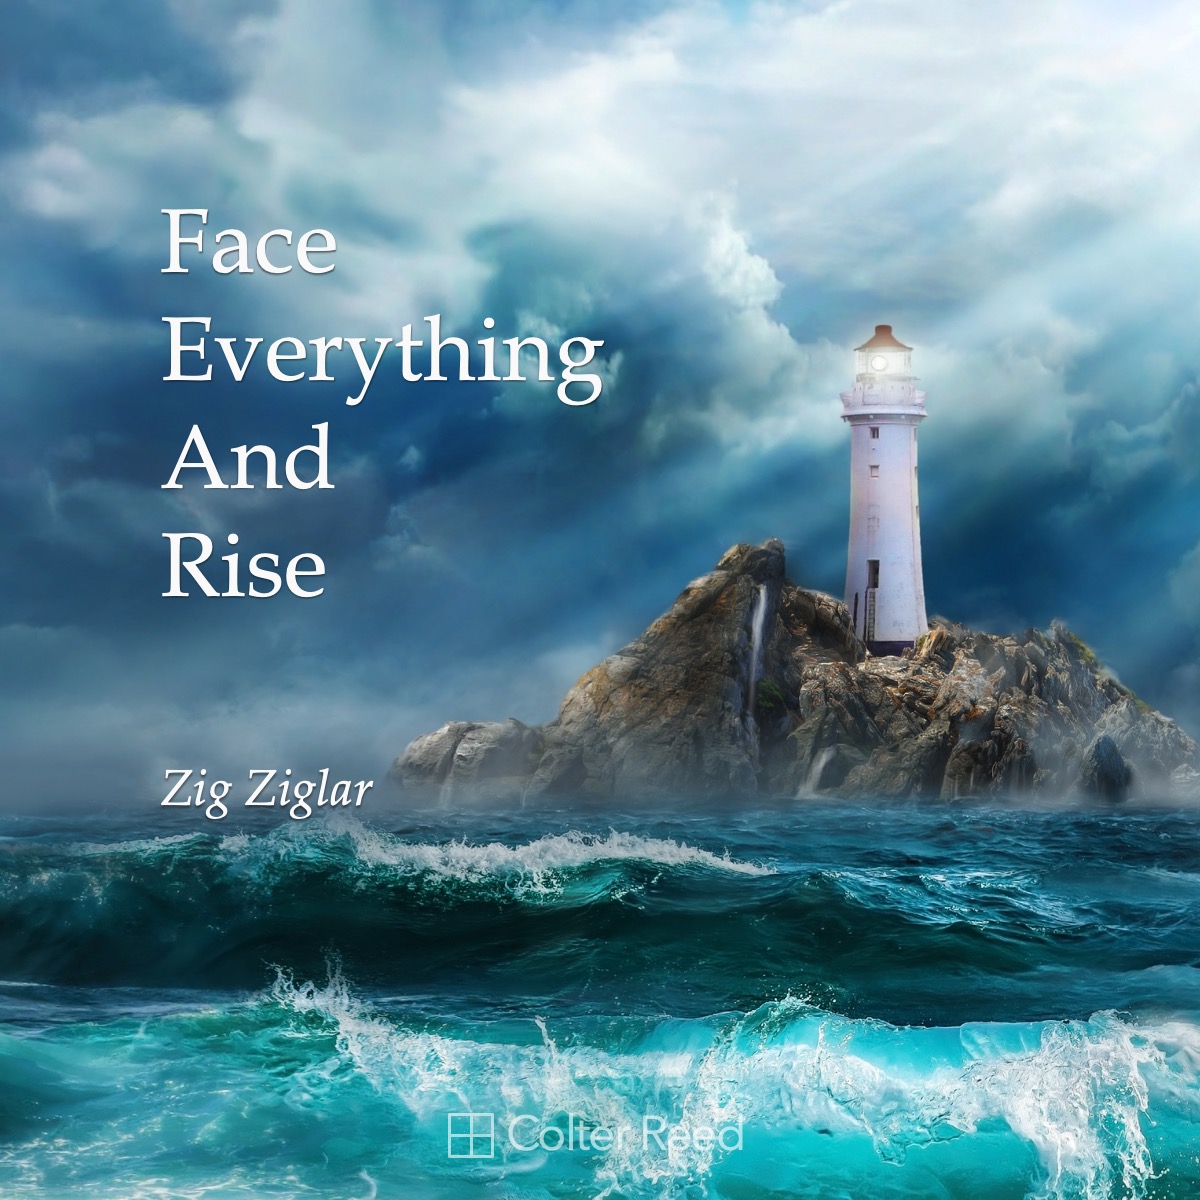 Face Everything And Rise. —Zig Ziglar